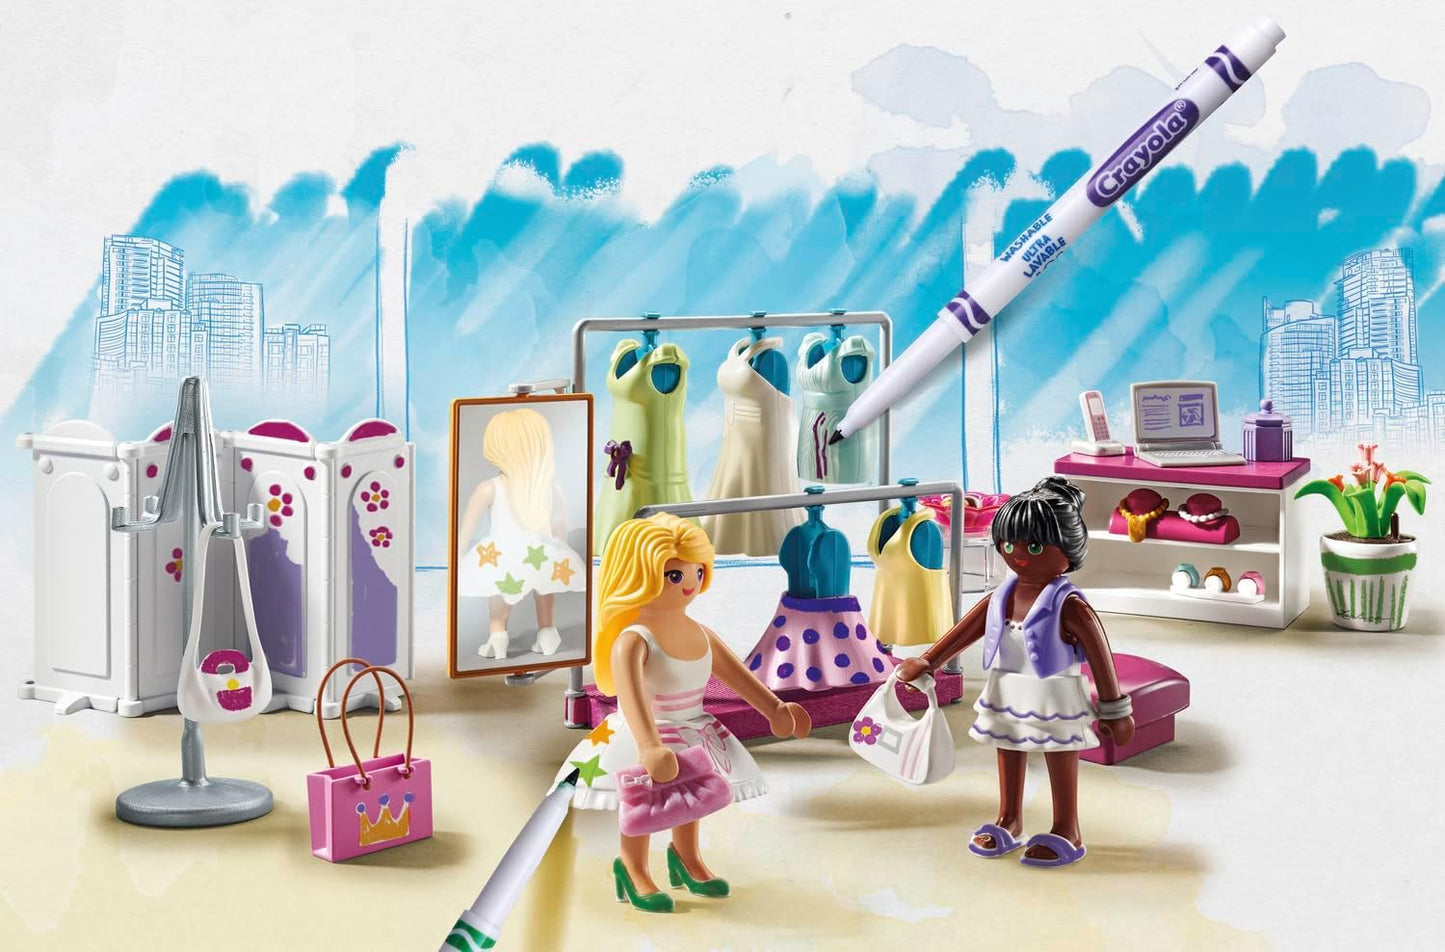 Playmobil 71372 Color Backstage, crie designs para diferentes estilos de roupas, com marcadores e acessórios solúveis em água, dramatizações divertidas e imaginativas, conjuntos de jogos artísticos adequados para crianças a partir de 5 anos